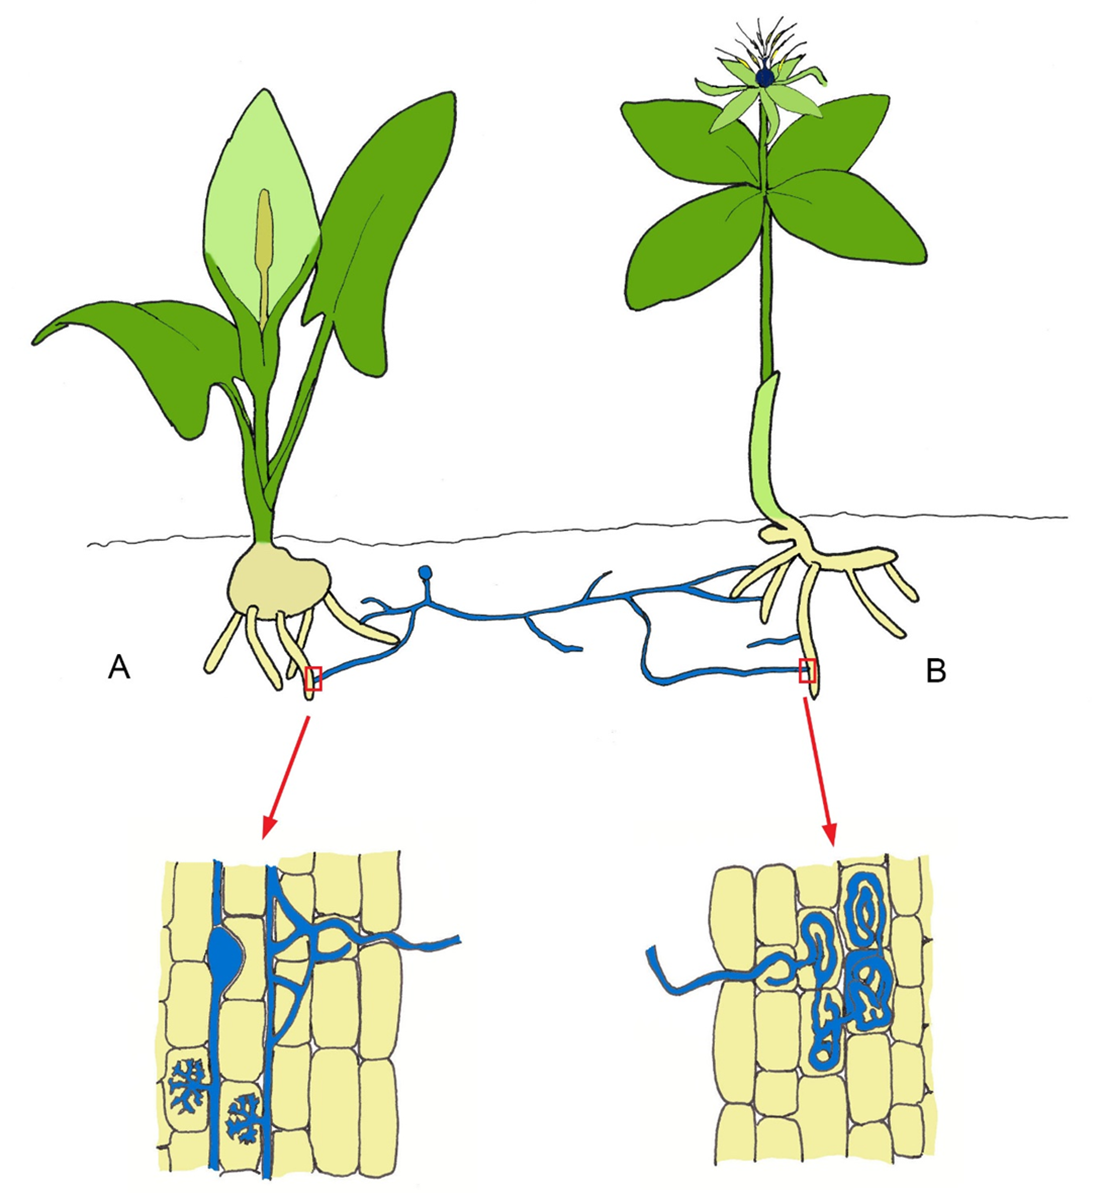 Tegning af to planter som er i forbindelse med hinanden via mykorrhiza.